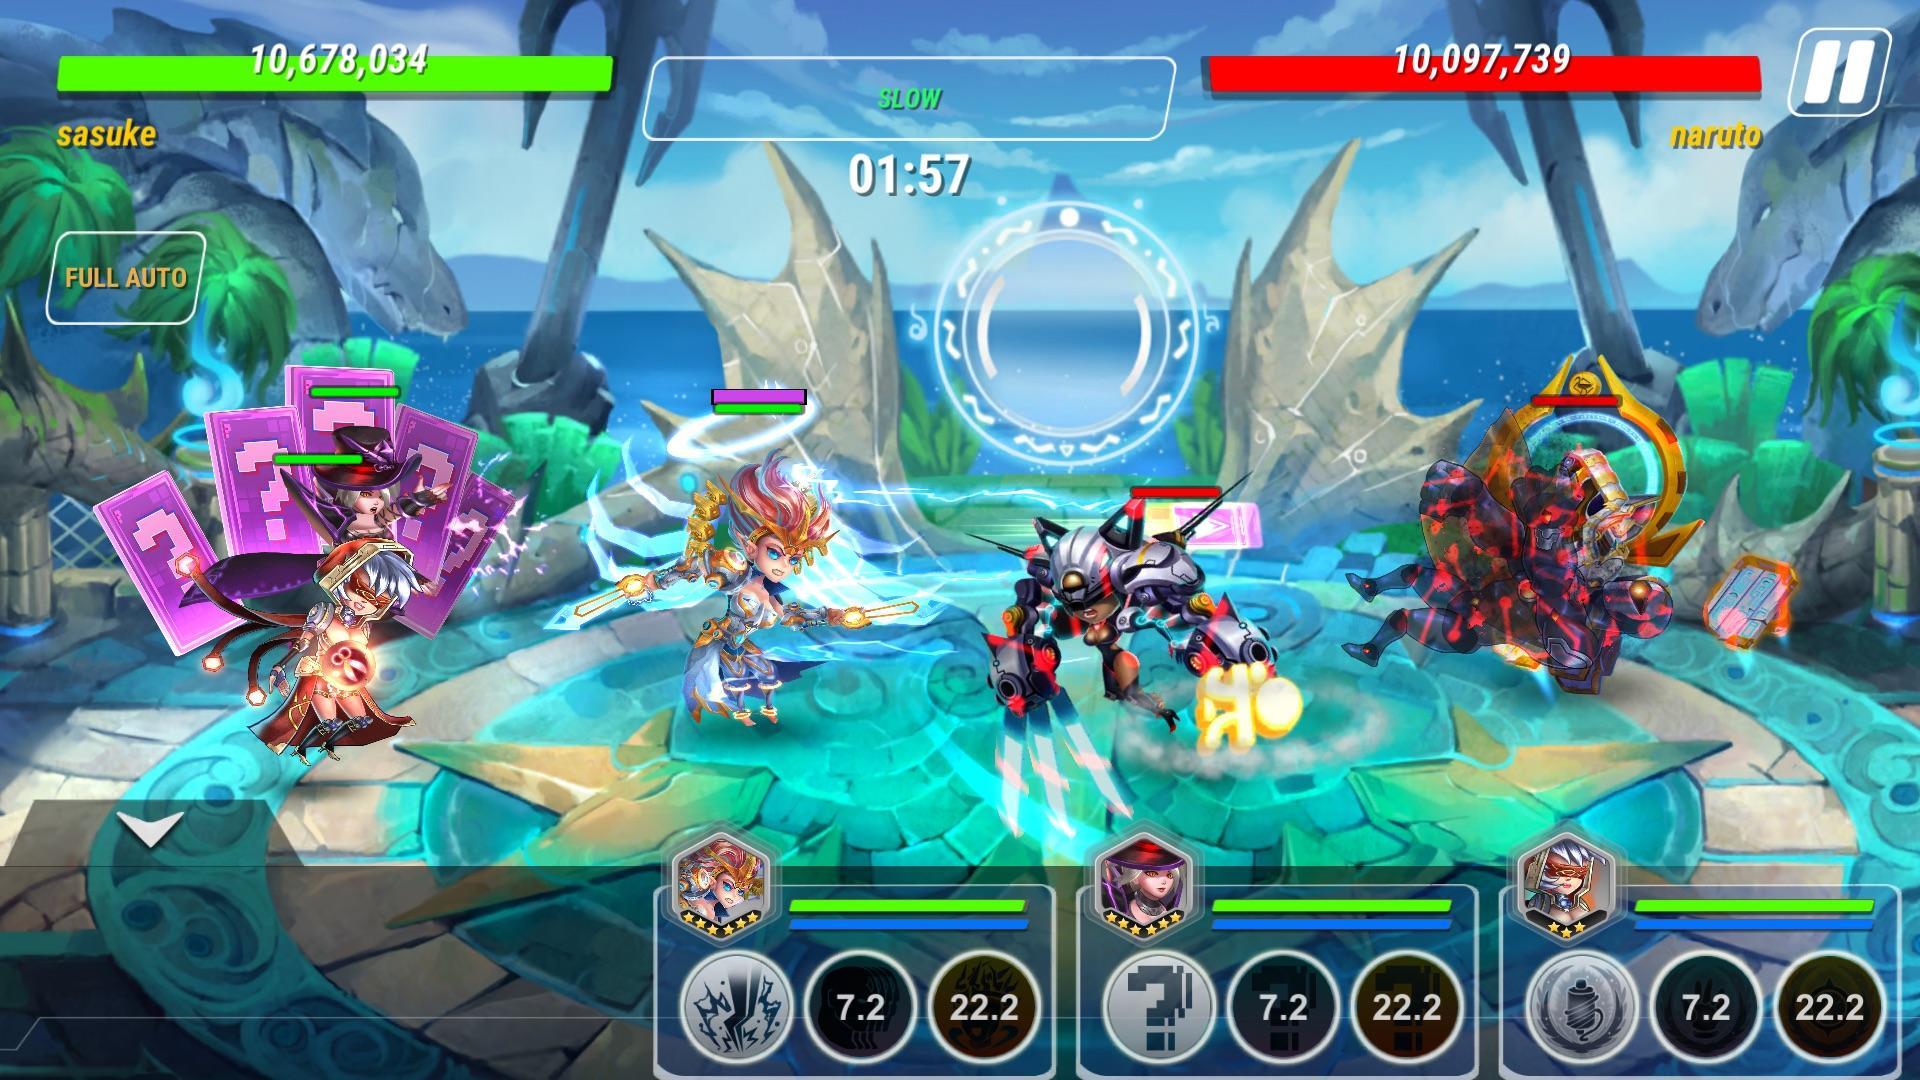 Screenshot of Heroes Infinity: Super Heroes